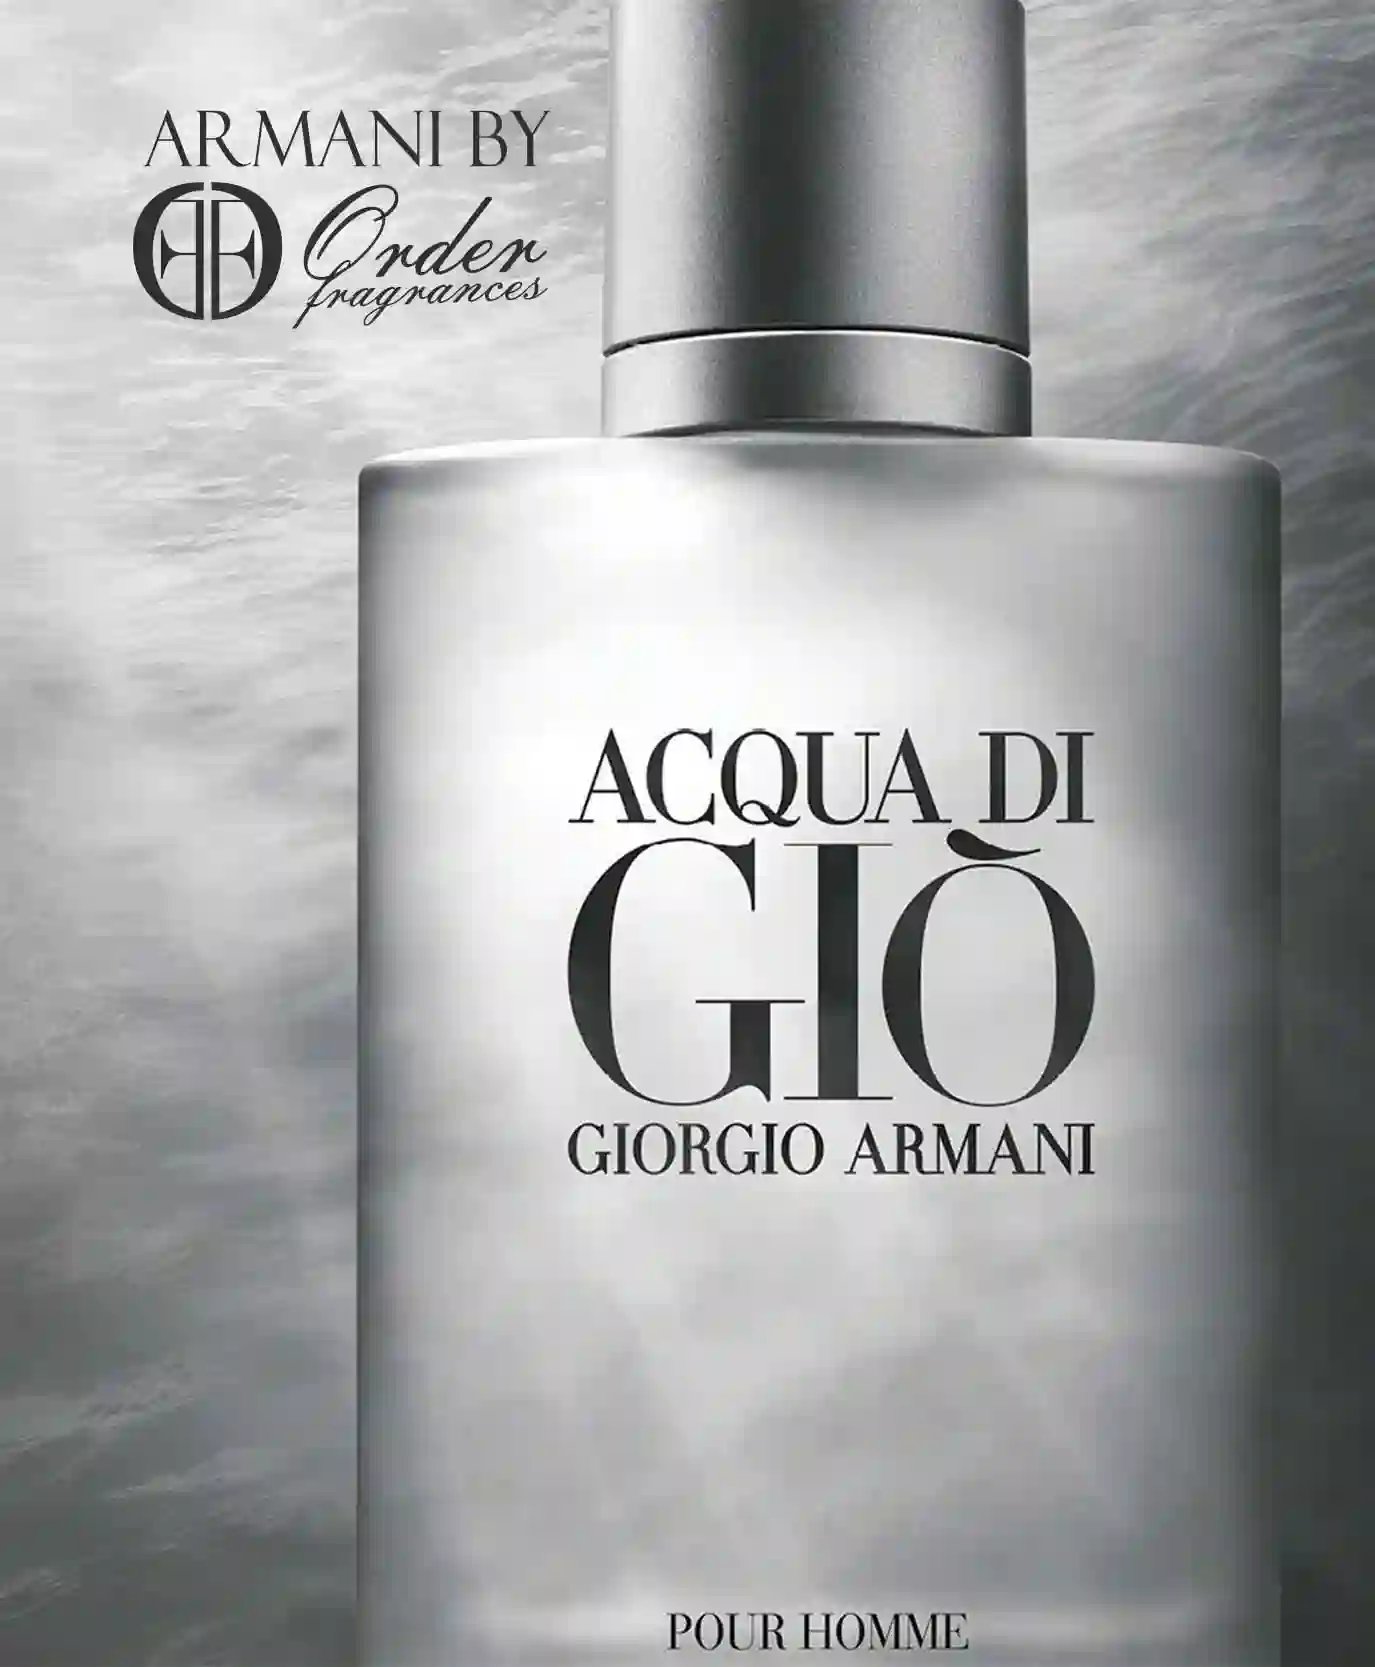 GIORGIO ARMANI Aqua Di Gio for Men Eau de Toilette Spray